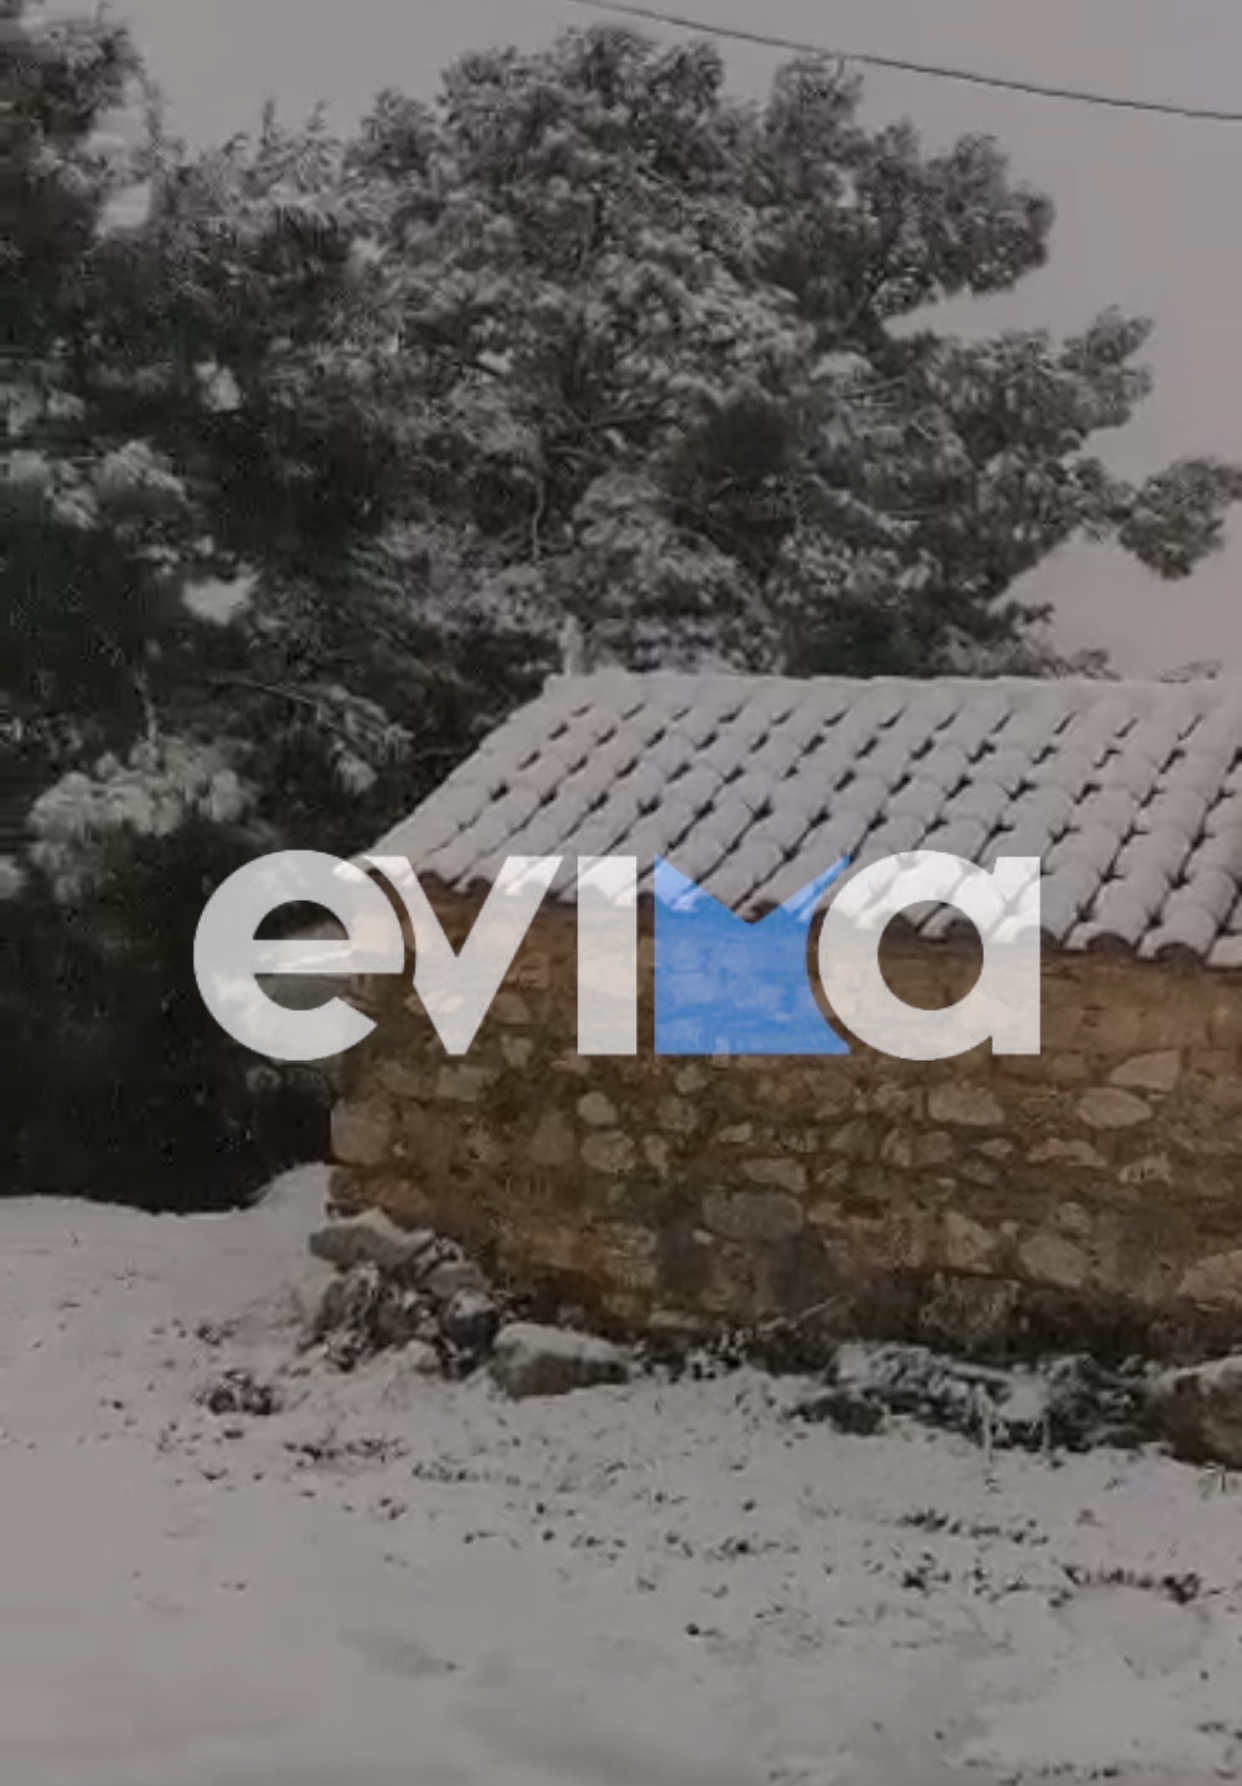 Κακοκαιρία «Ελπίς»: Χιονίζει στο κέντρο του Αλιβερίου – Είναι Σκυριανός ο καιρός, θα βάλει πολύ χιόνι, λένε κάτοικοι (vid)